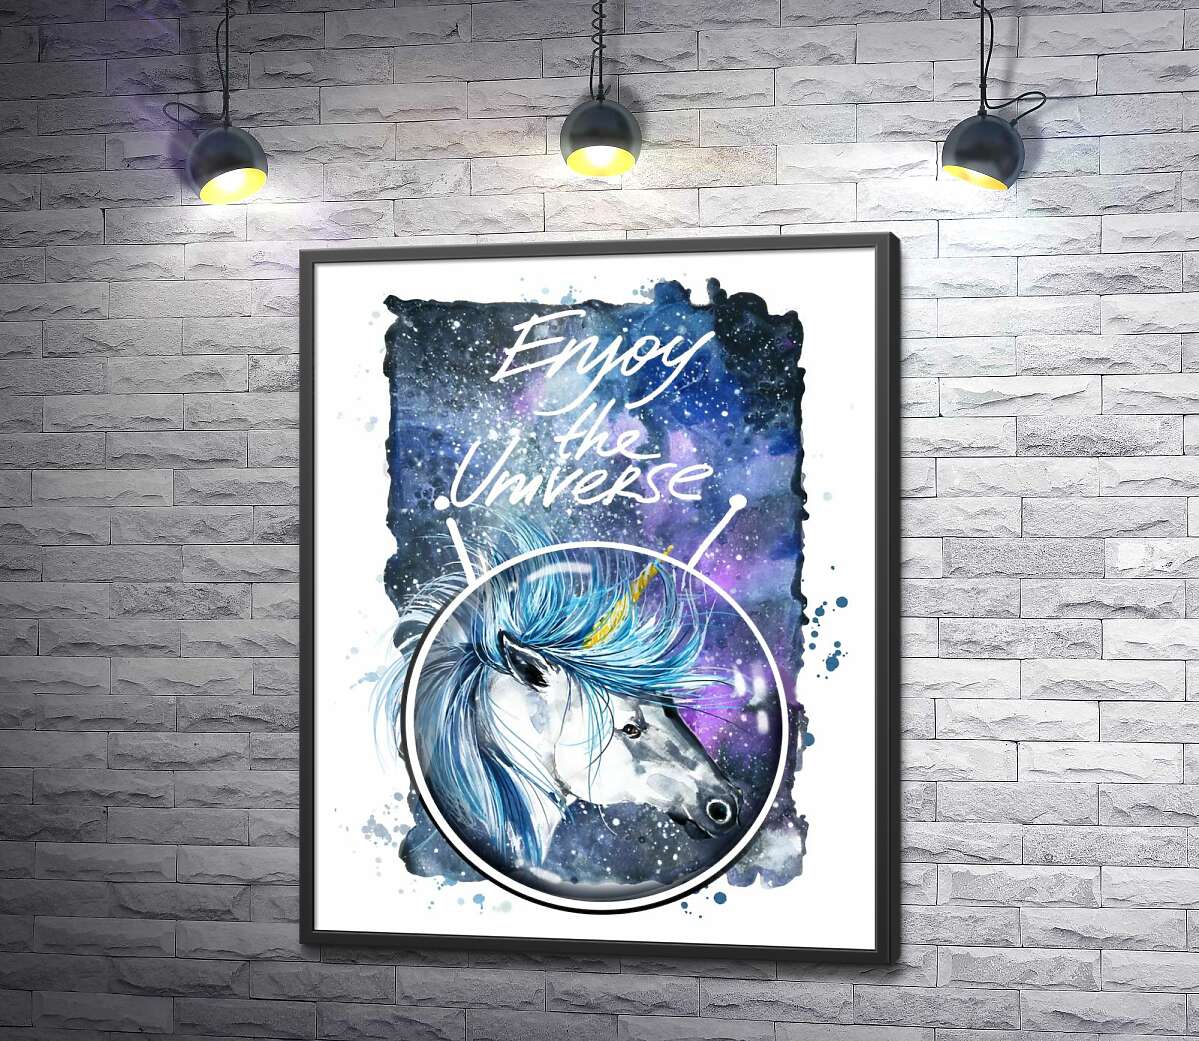 постер Голубая грива единорога развевается в космическом пространстве рядом с надписью "Enjoy the Universe"